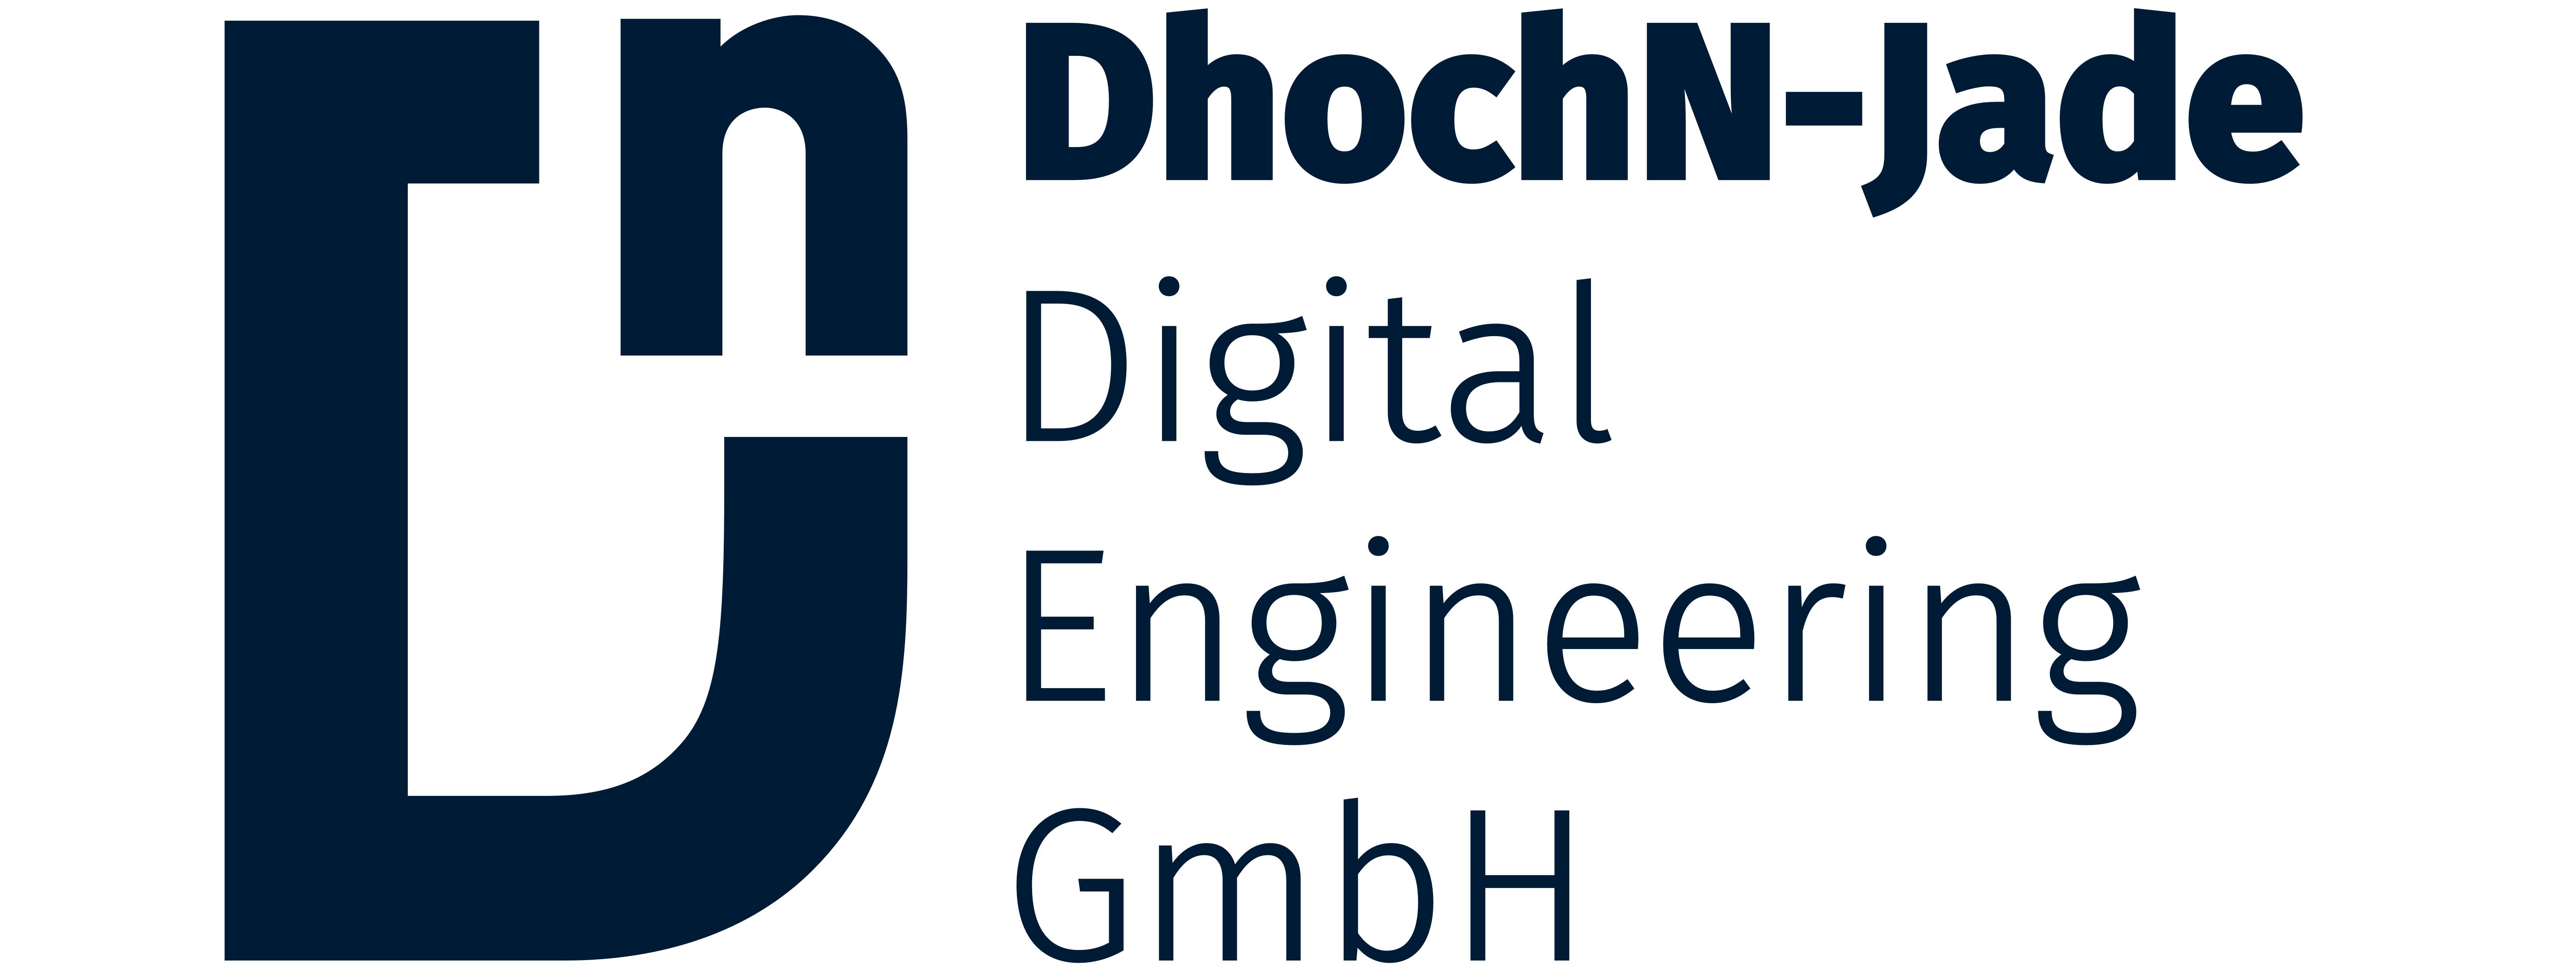 Logo DhochN-Jade